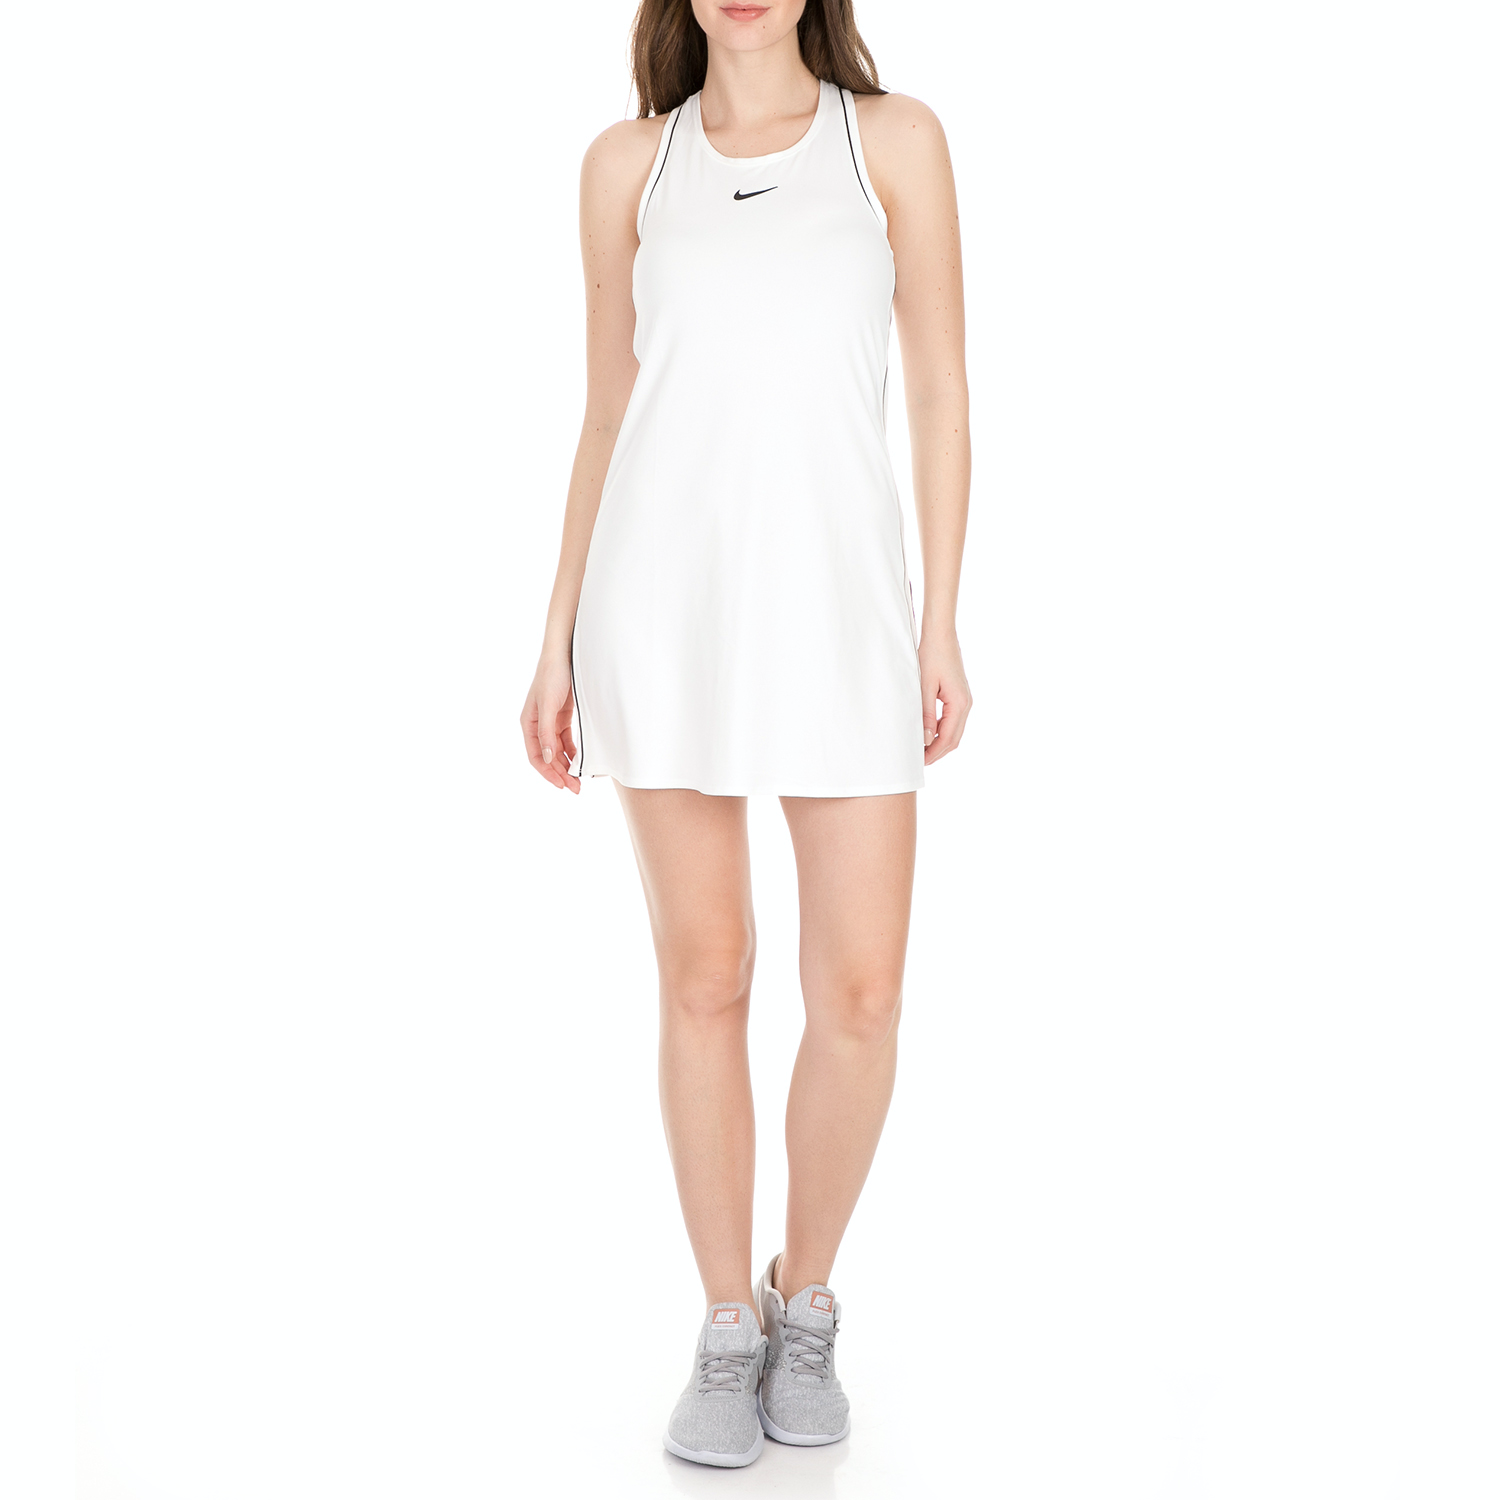 Γυναικεία/Ρούχα/Φορέματα/Μίνι NIKE - Γυναικείο mini φόρεμα tennis Nike Sportswear λευκό